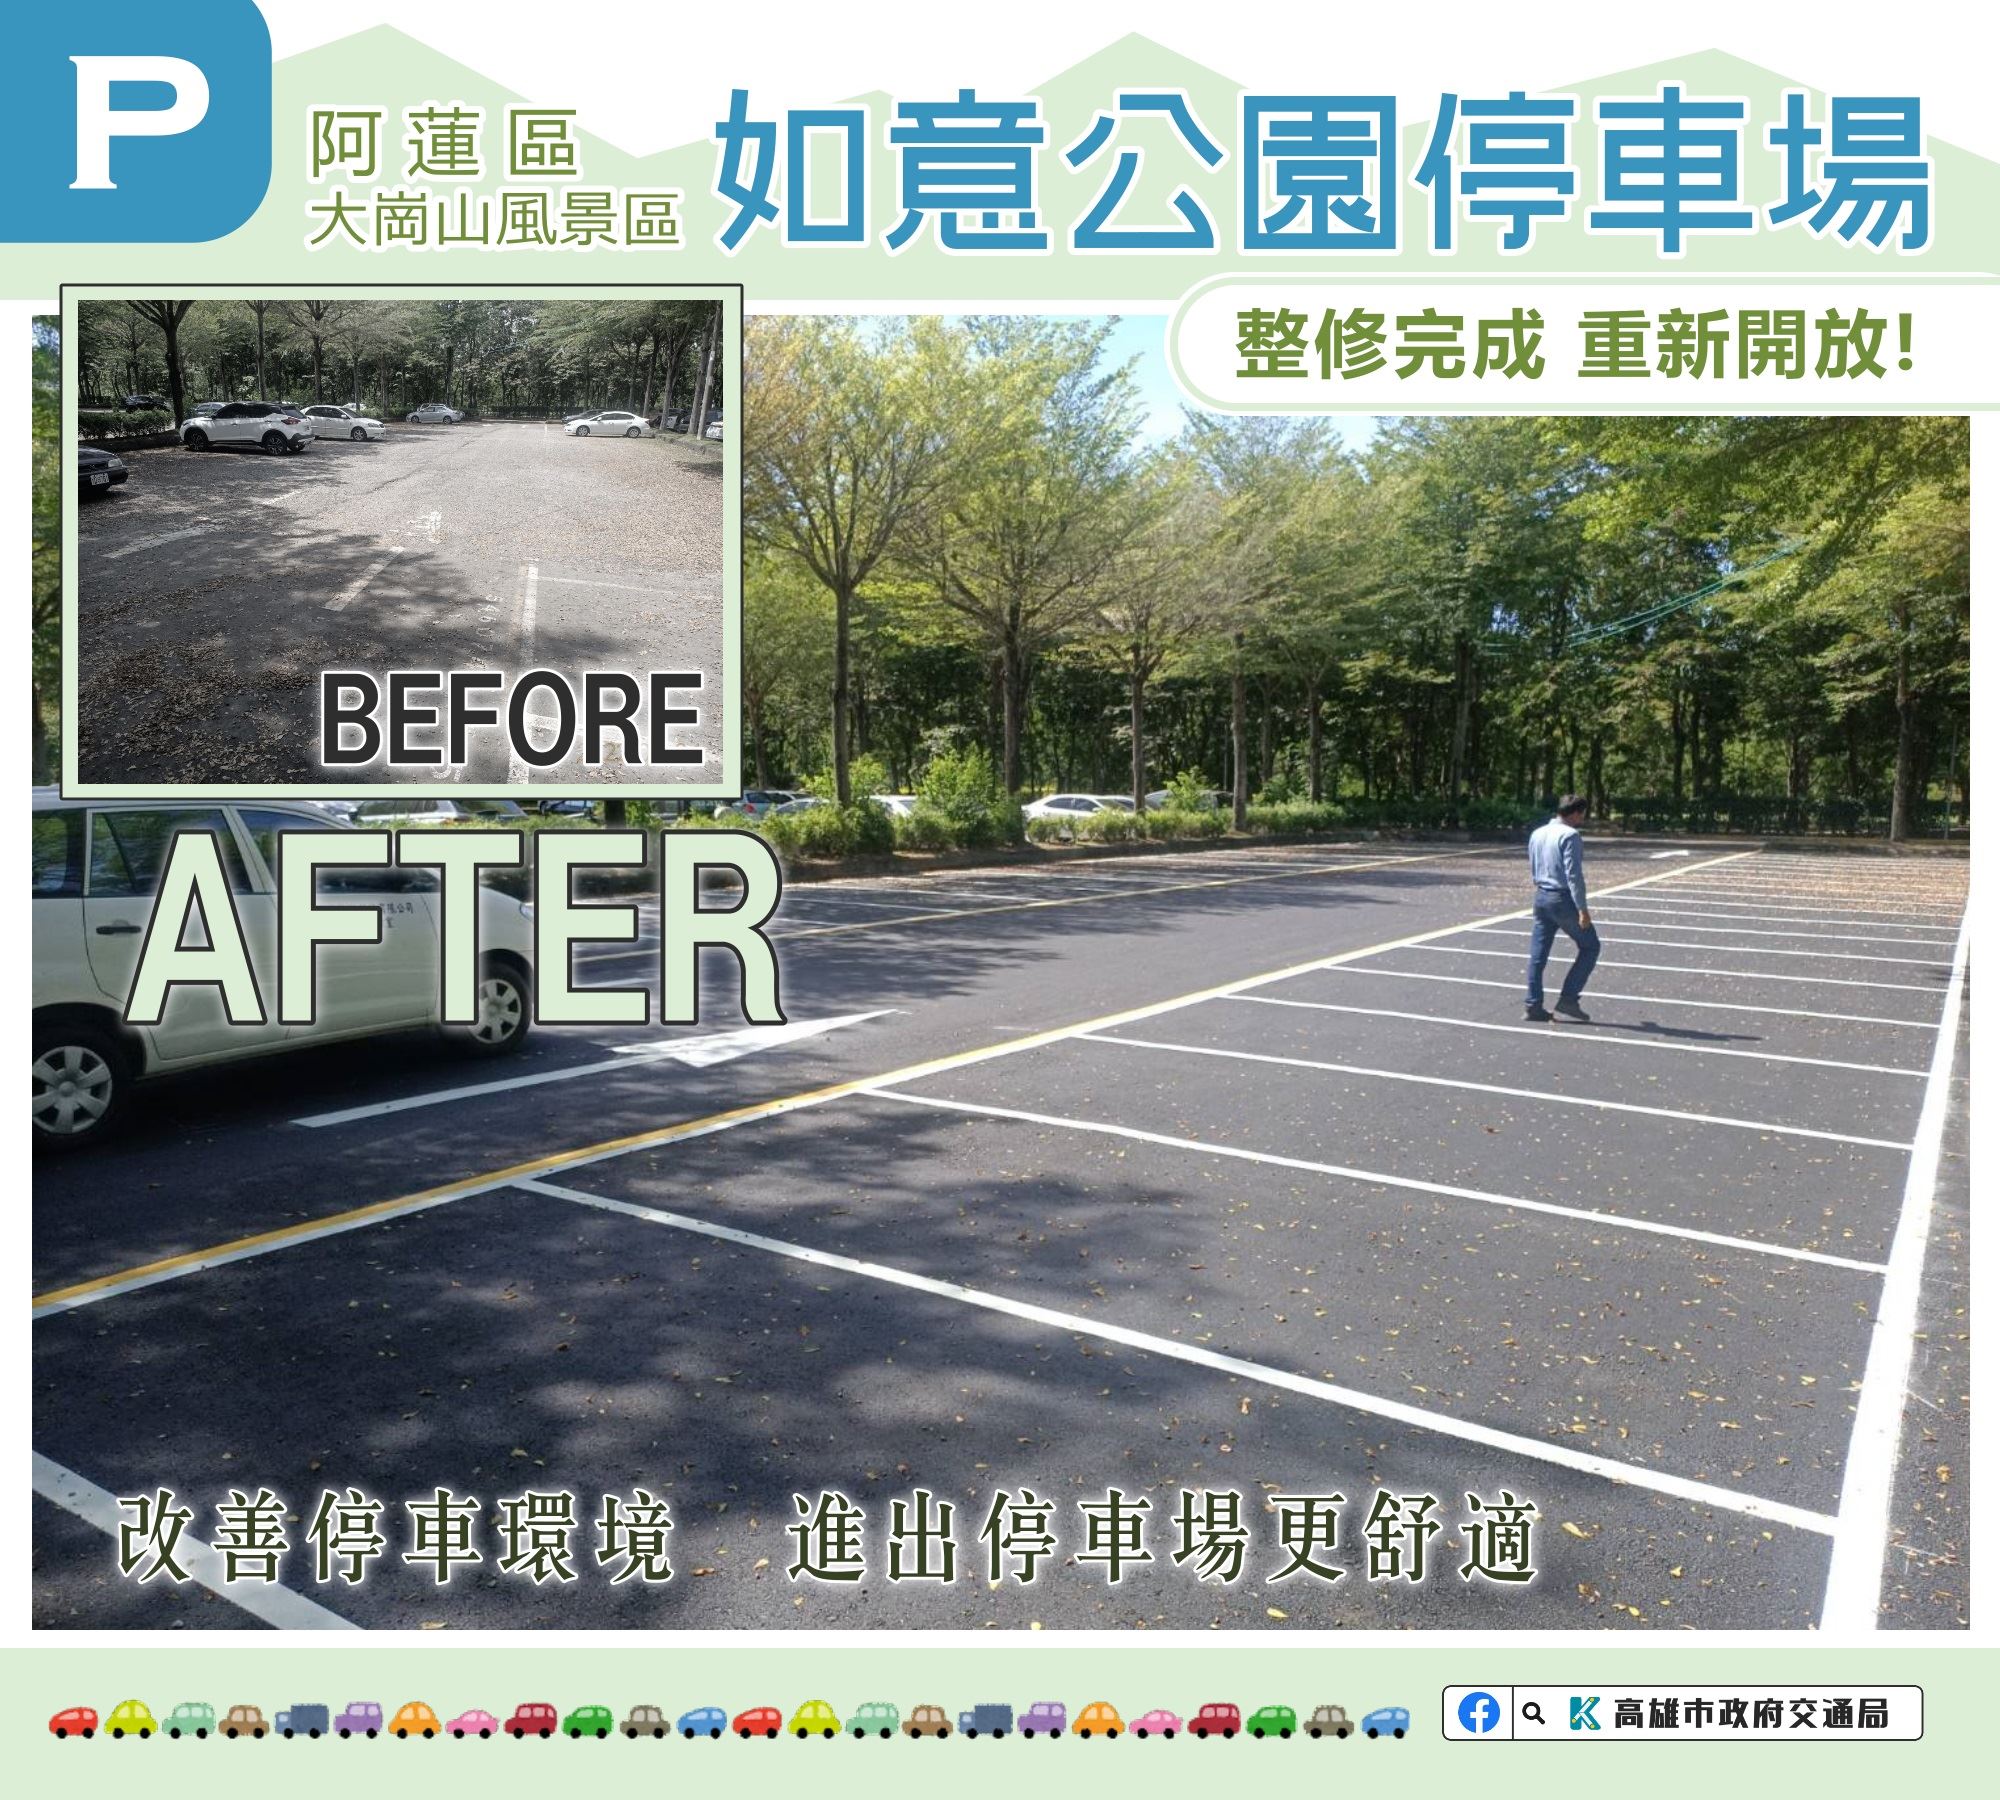 阿蓮區「如意公園停車場」整修完成  提供大崗山生態園區優質停車環境